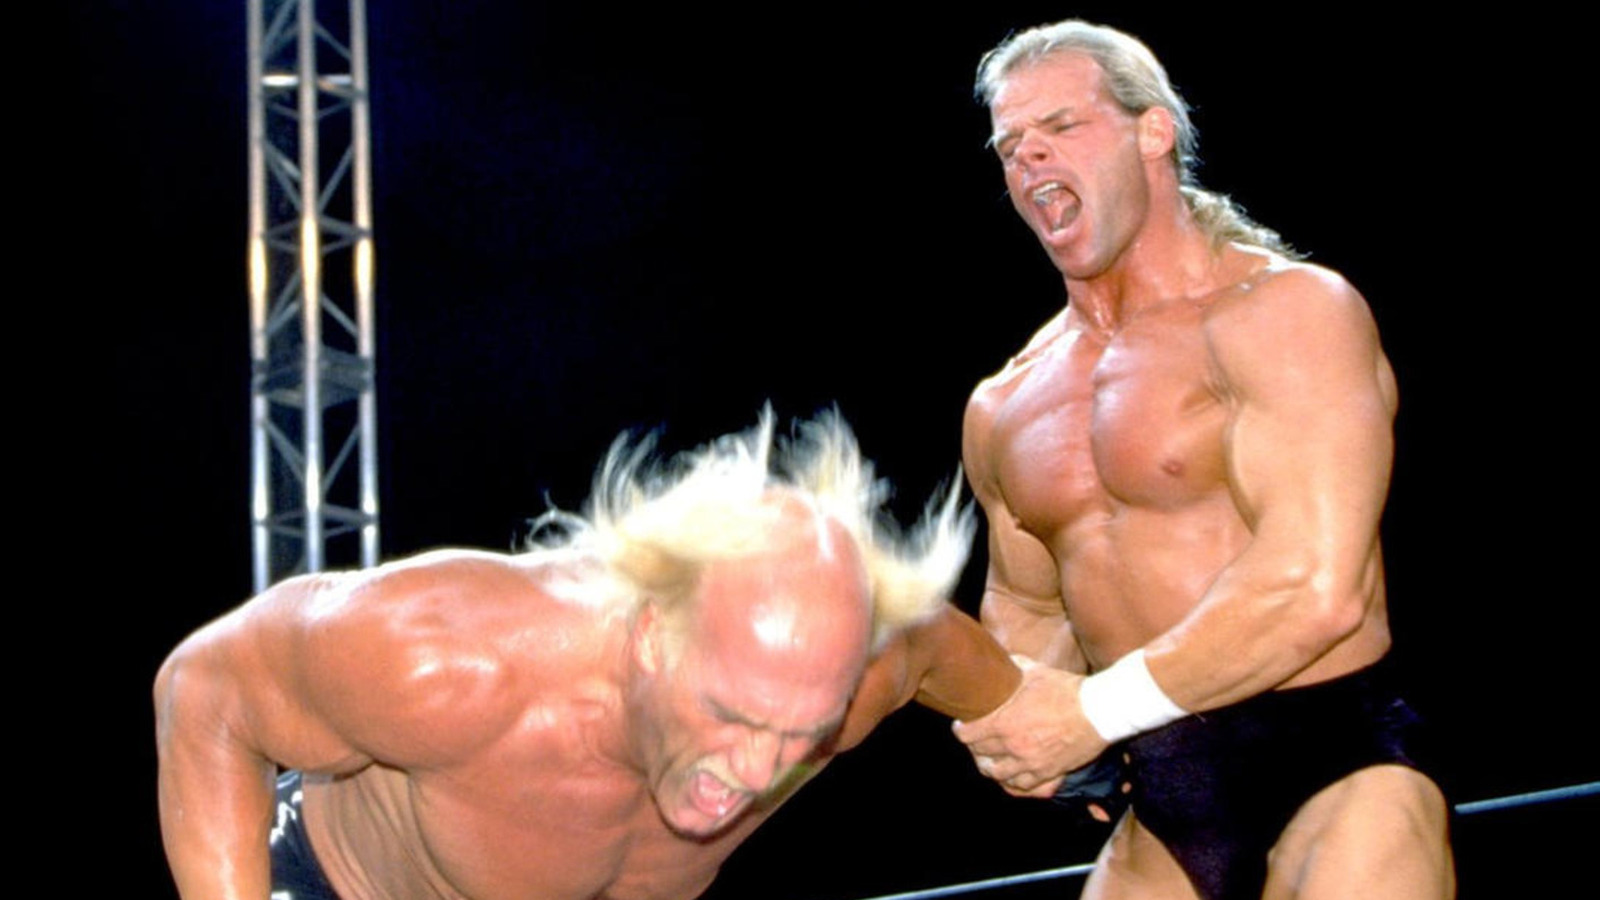 Ted DiBiase evalúa las habilidades de Lex Luger durante su carrera en la WWE